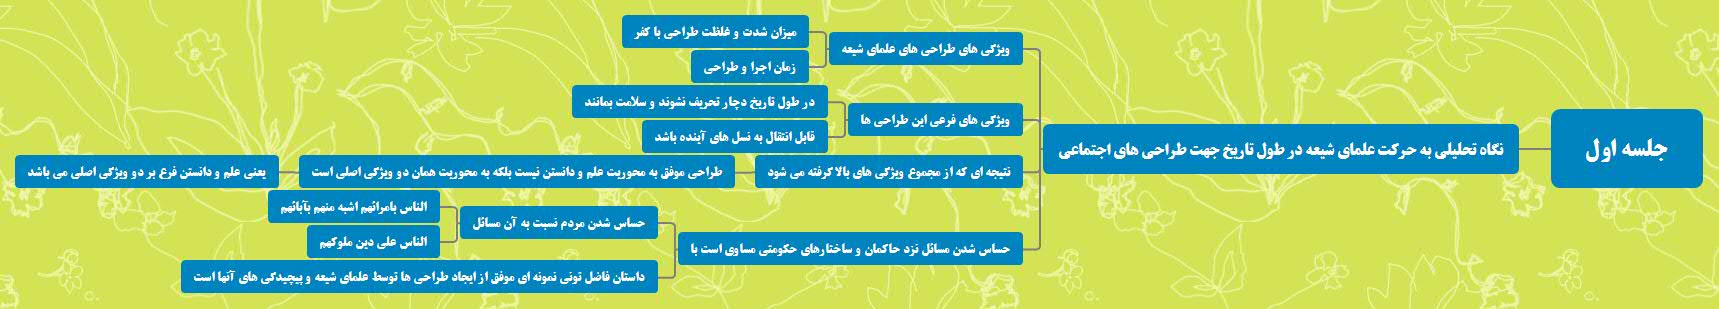 نقشه ذهنی جلسه اول دوره جهت حرکت انقلاب اسلامی